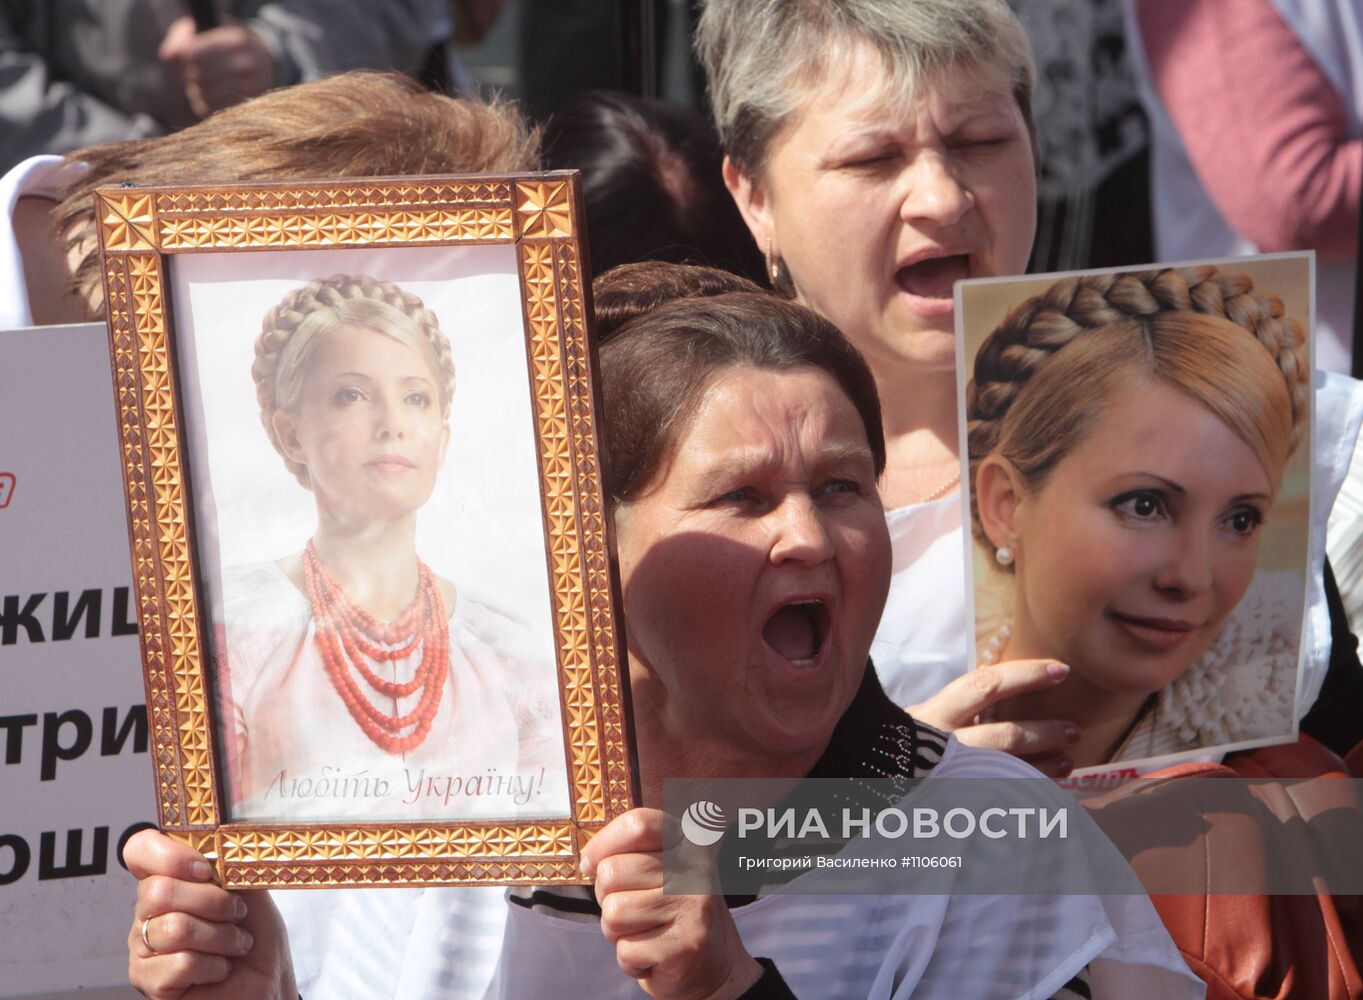 Акция оппозиции "За Украину без репрессий" в Киеве